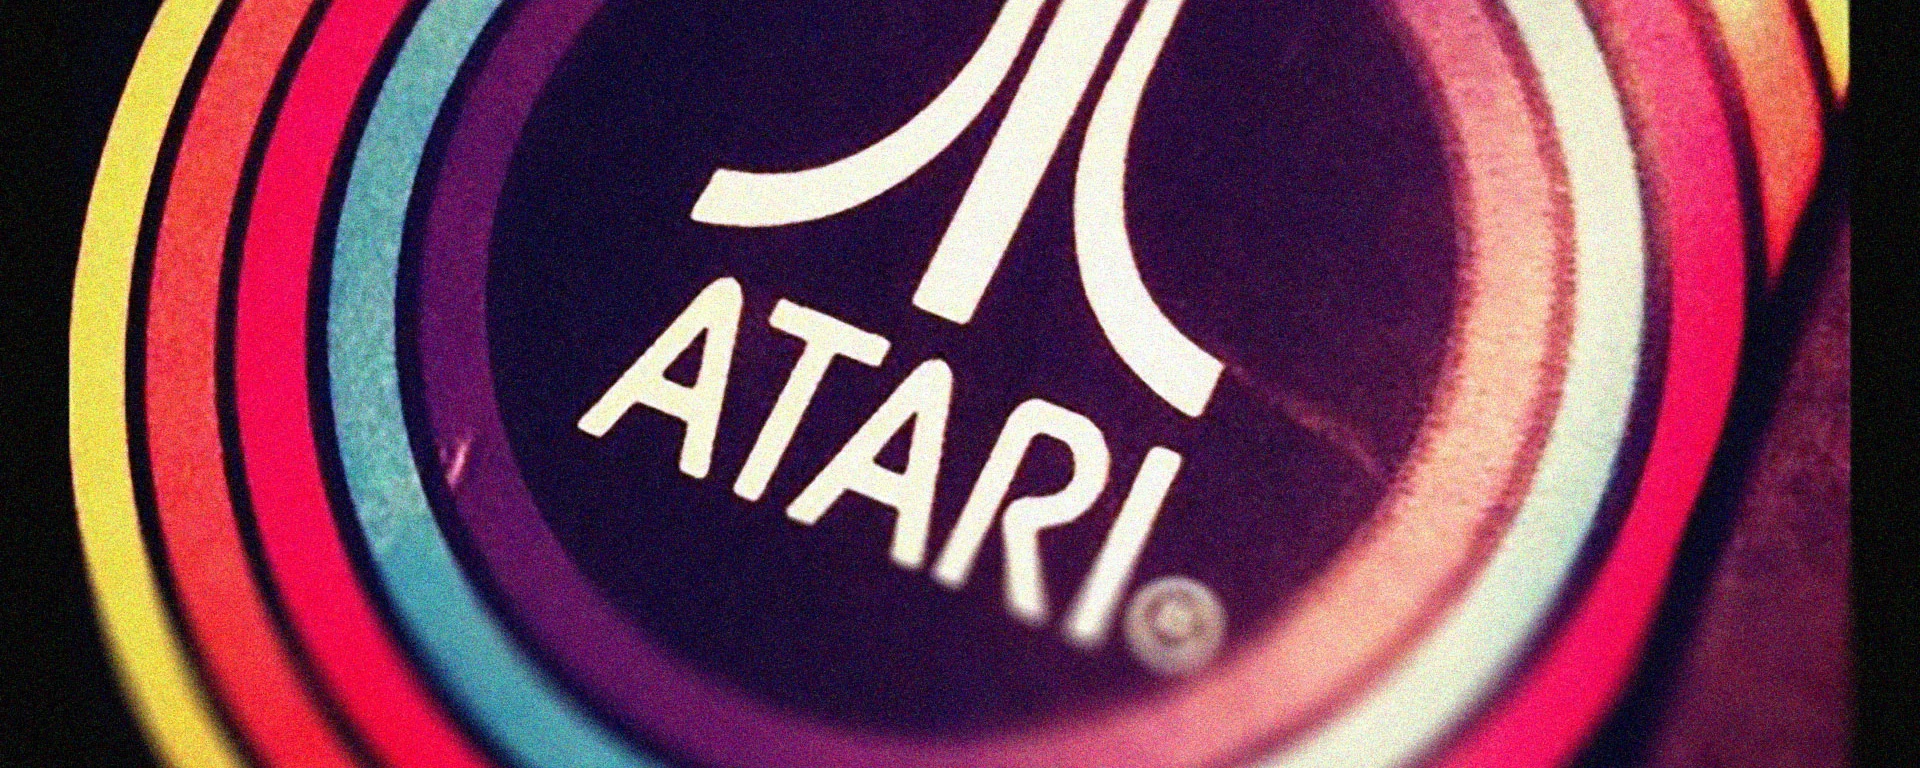 Atari erweitert die Welt der klassischen Spiele